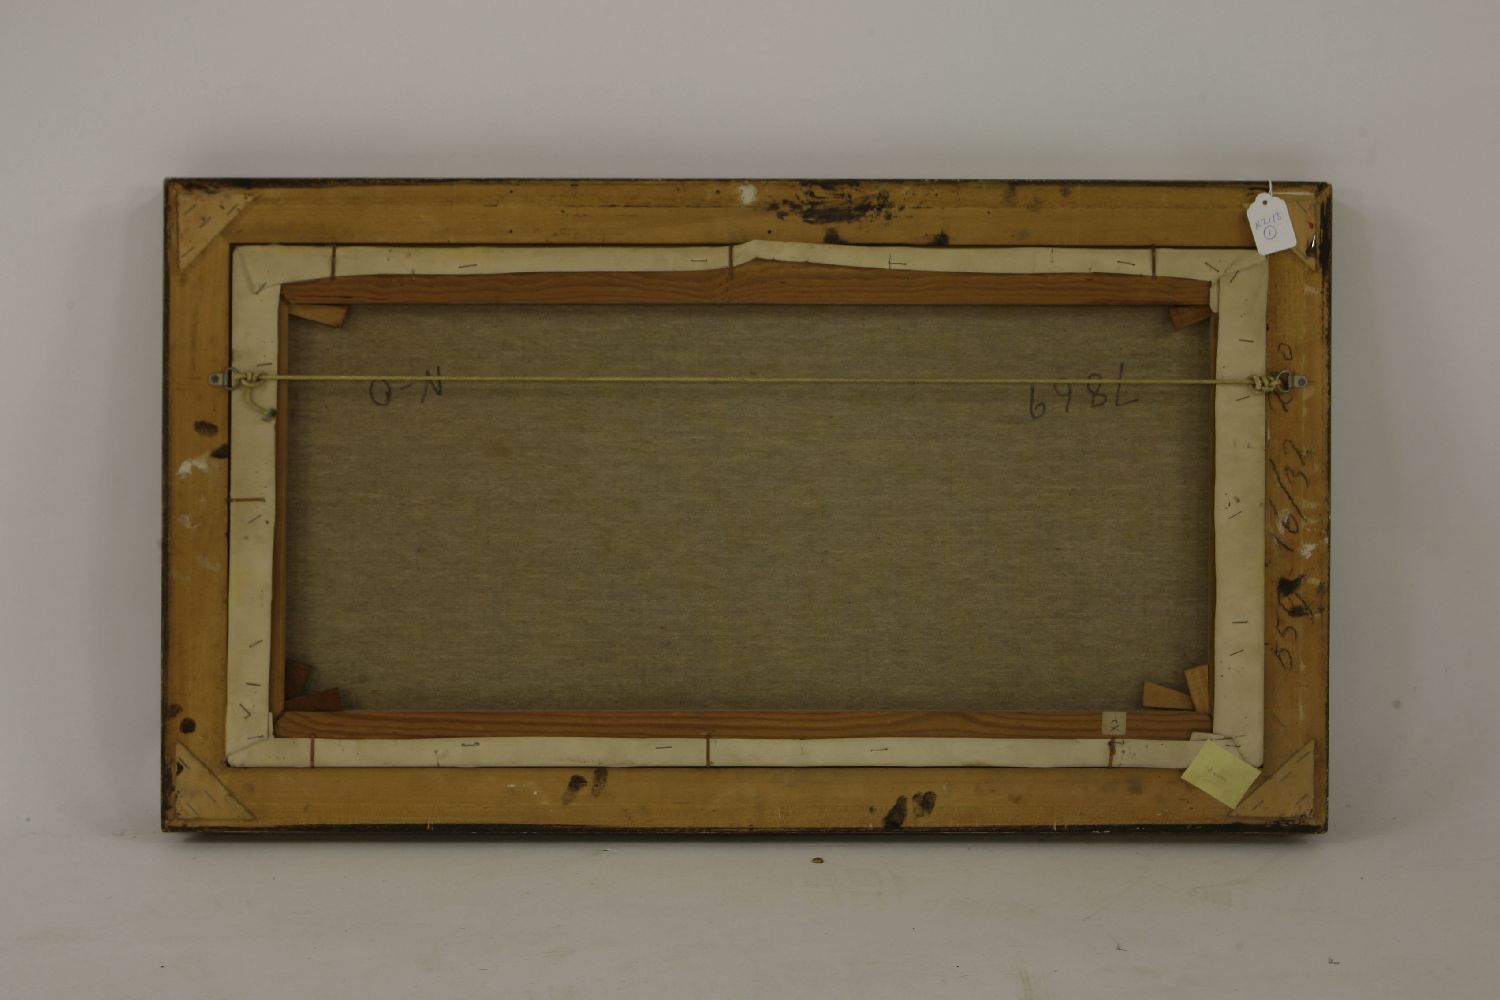 A Beardsley MOONLIGHT SHORE SCENEsigned lower left,oil on canvas, gilt framed39 x 79cm - Image 3 of 4